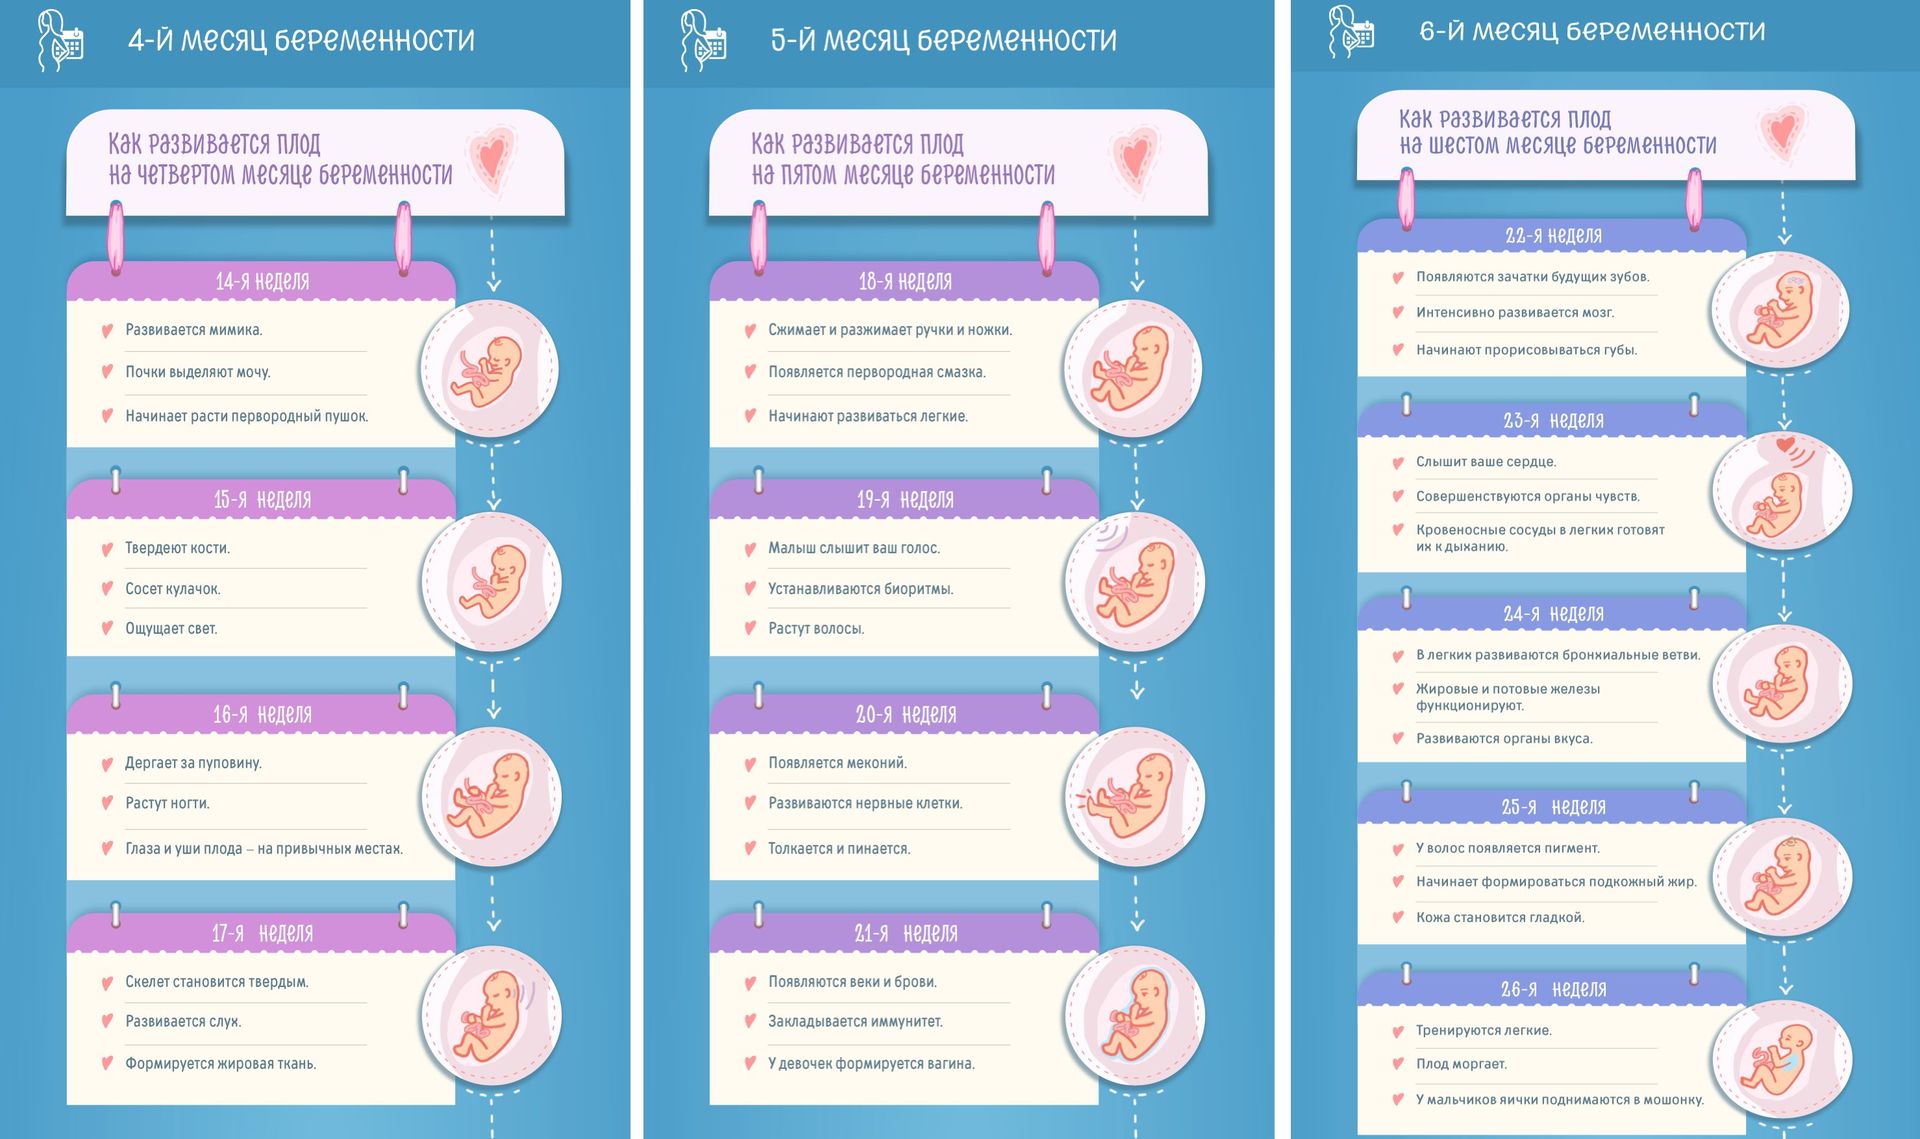 Первые признаки беременности: как определить беременность на ранних сроках